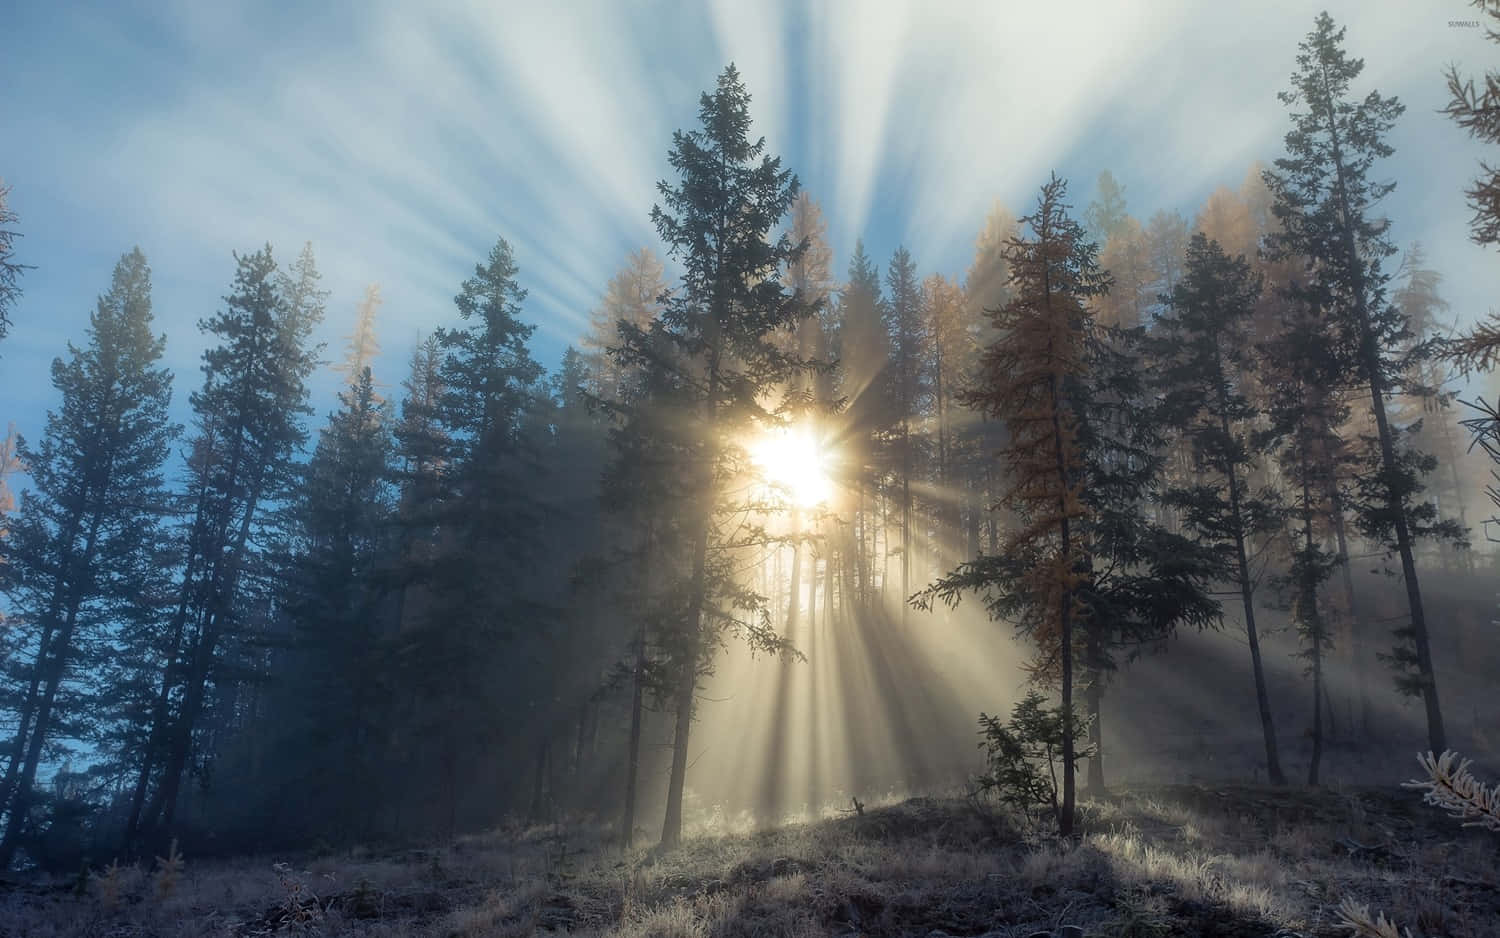 "Misty Morning - Enjoying Nature's Silence"